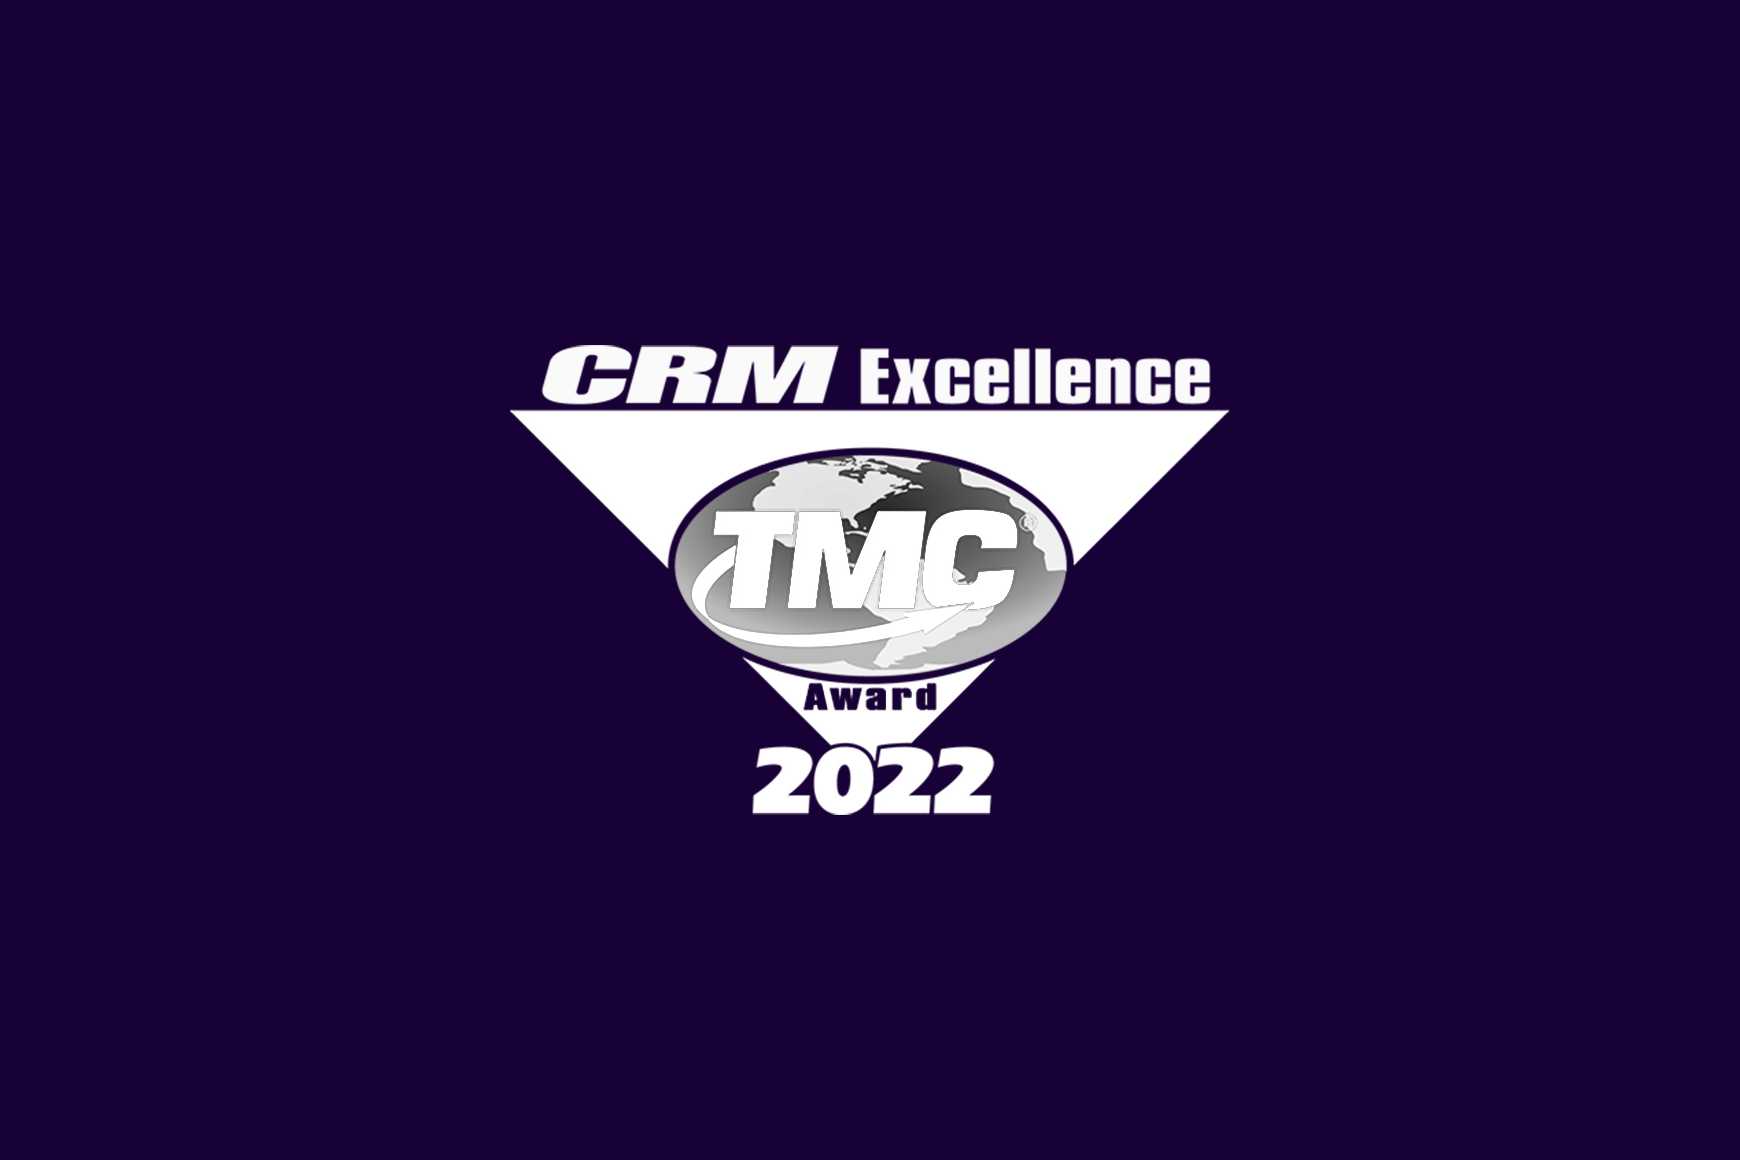 2022 CRM Excellence Award